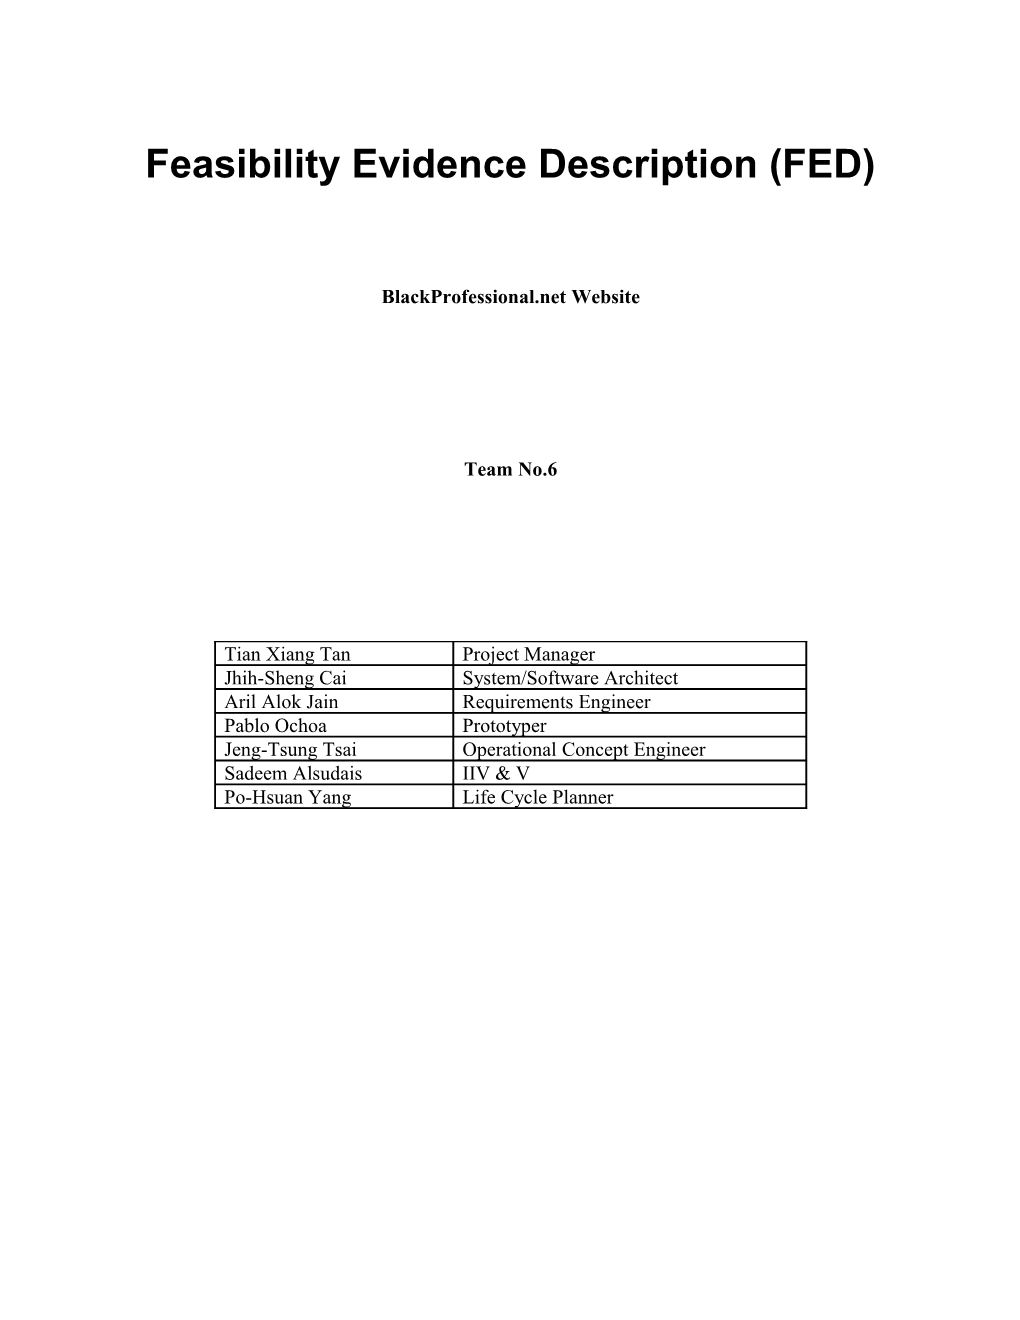 Feasibility Rationale Description (FRD) s7